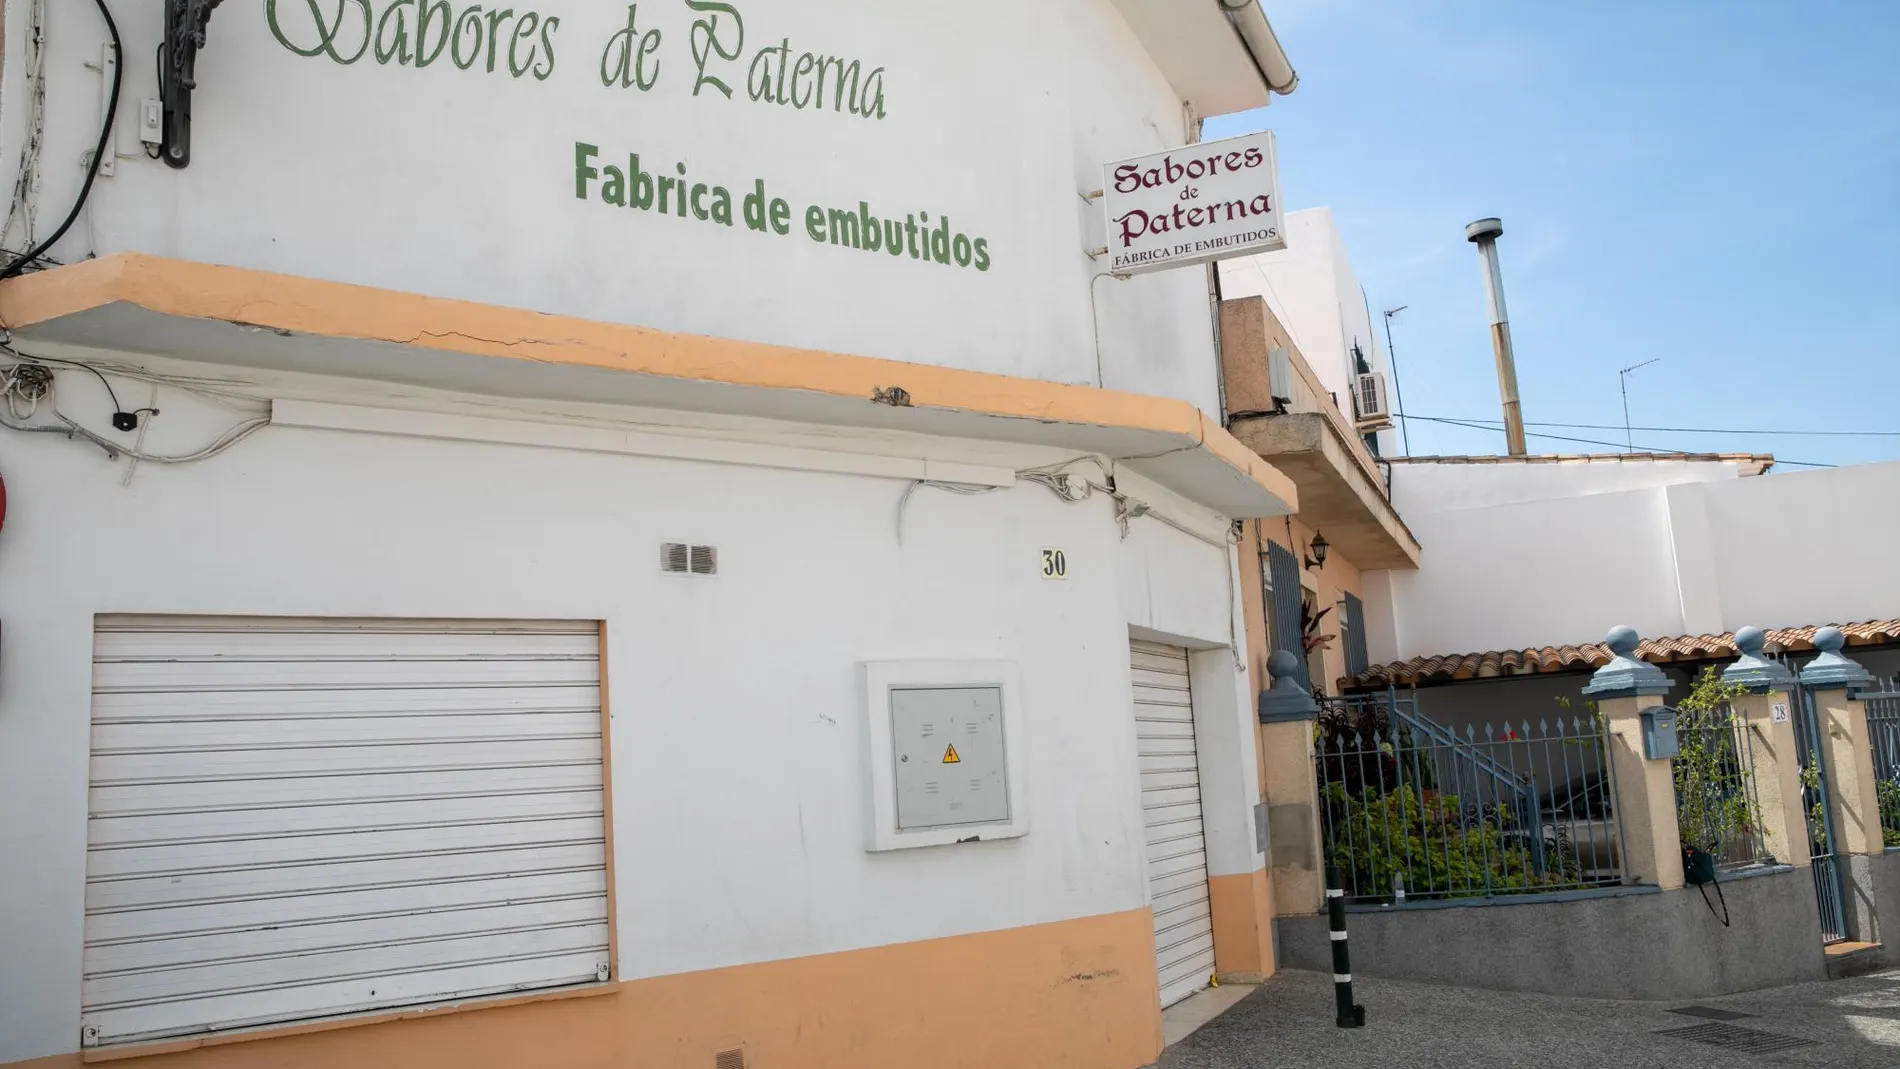 La fábrica Sabores de Paterna continuará cerrada hasta hacer unas reformas pero la mercancía ya elaborada puede volver a comercializarse / EP